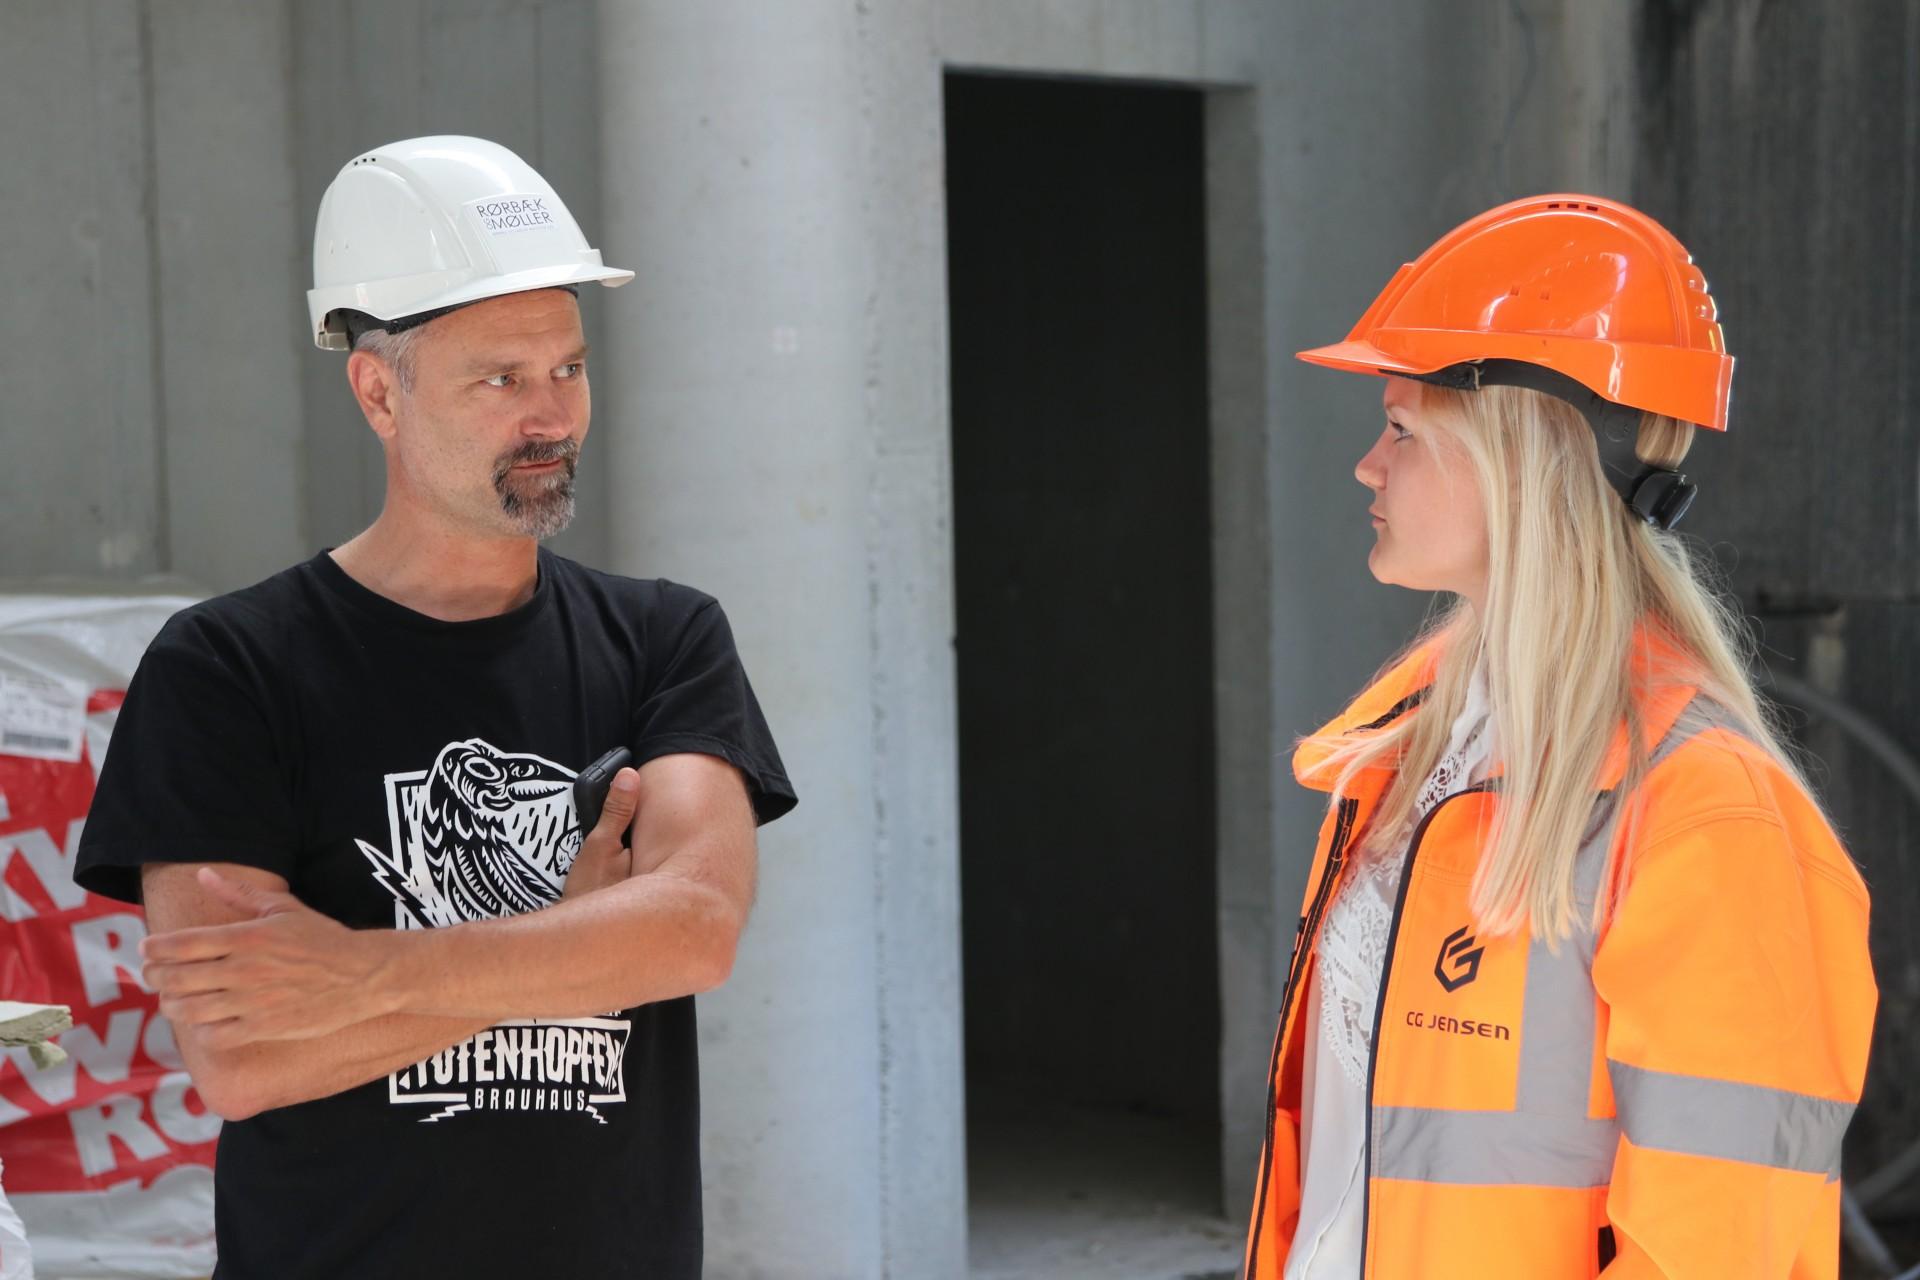 Arkitekt Thomas Iversen og byggeleder Anna Lind Esmarch leder byggeriet af Trekroner Kirke. Foto: Torben Jastram.